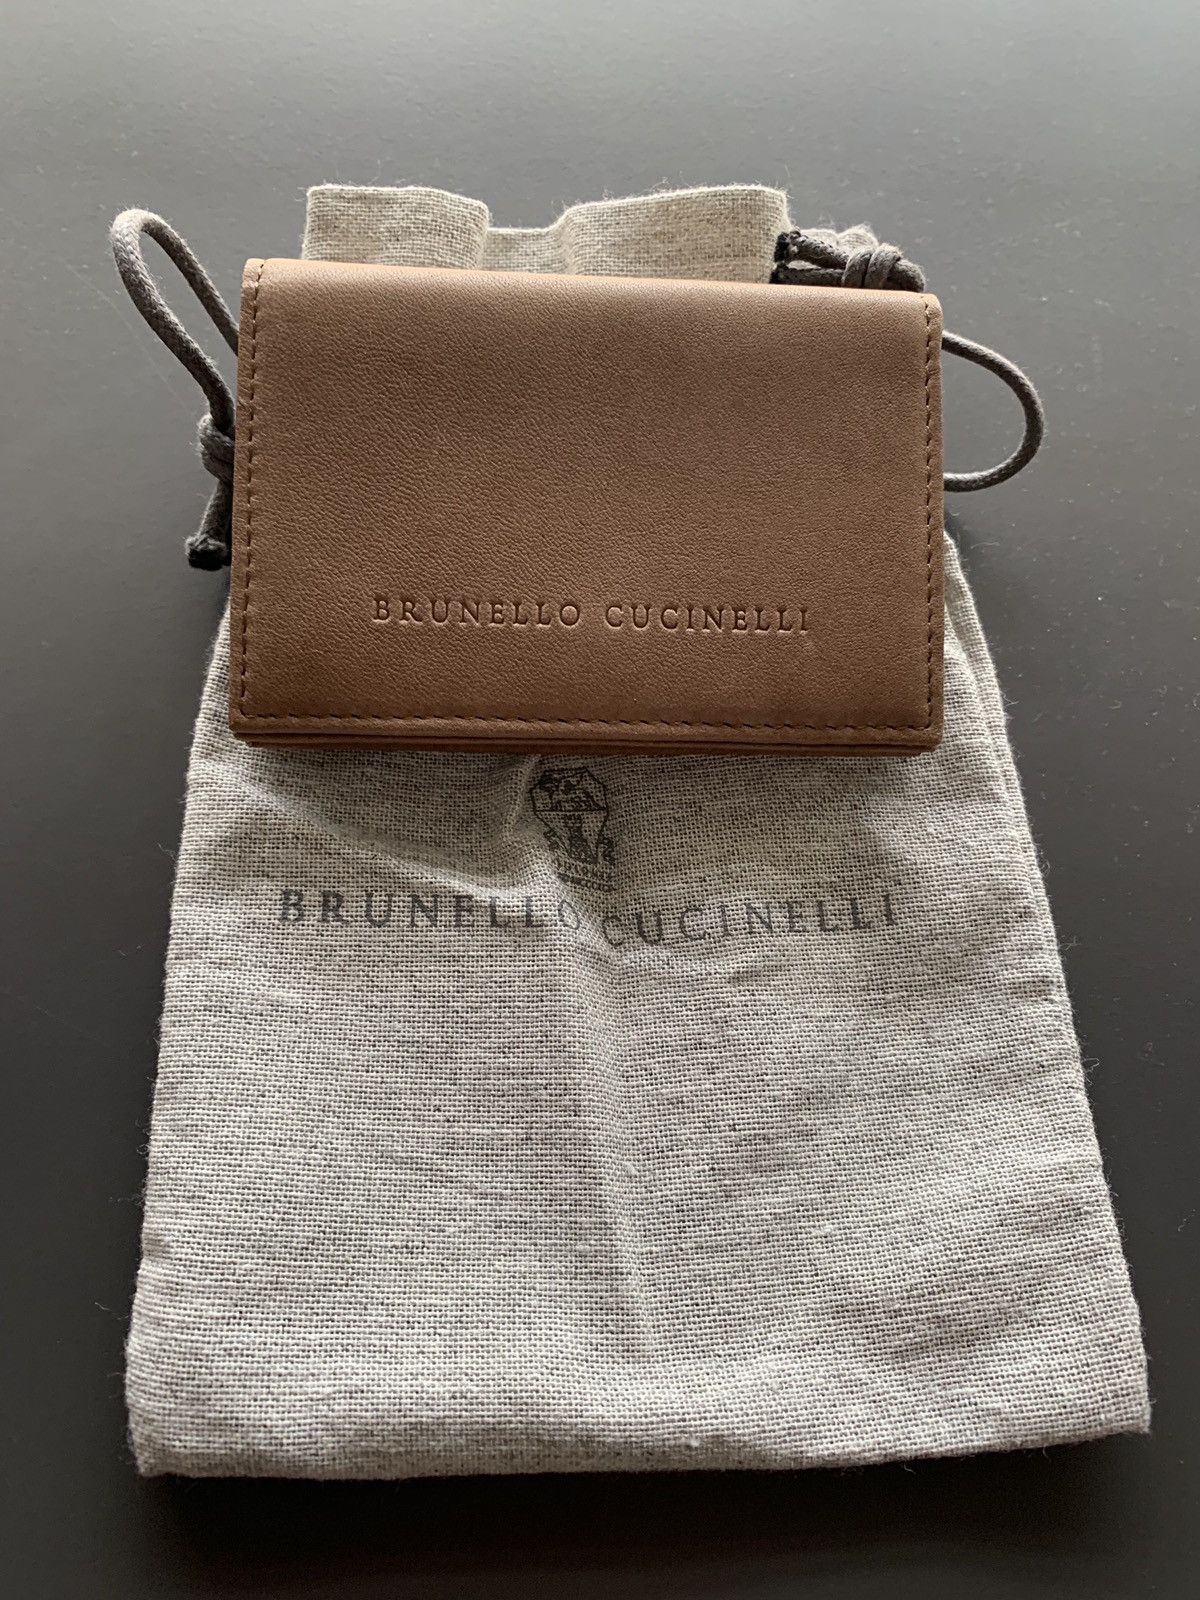 Brunello Cucinelli Card Holder / Wallet | Grailed